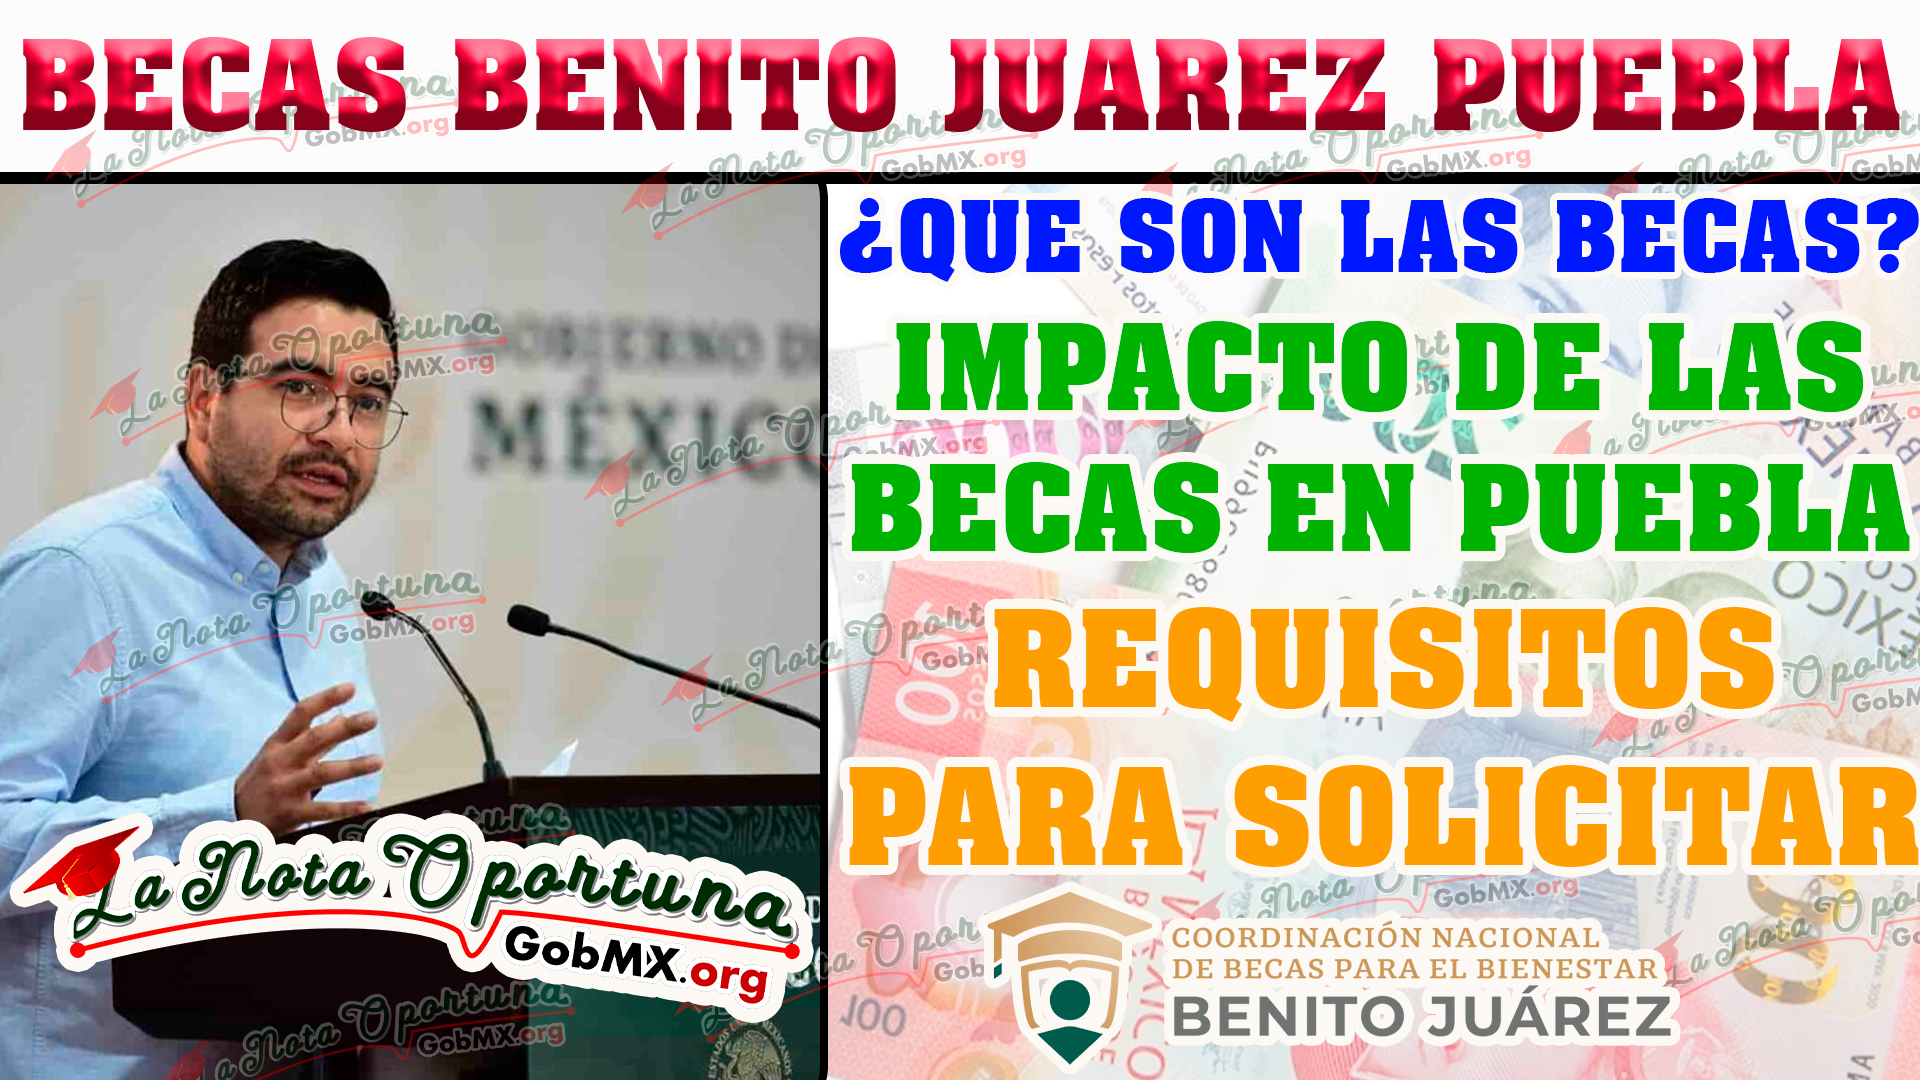 Becas Benito Juárez